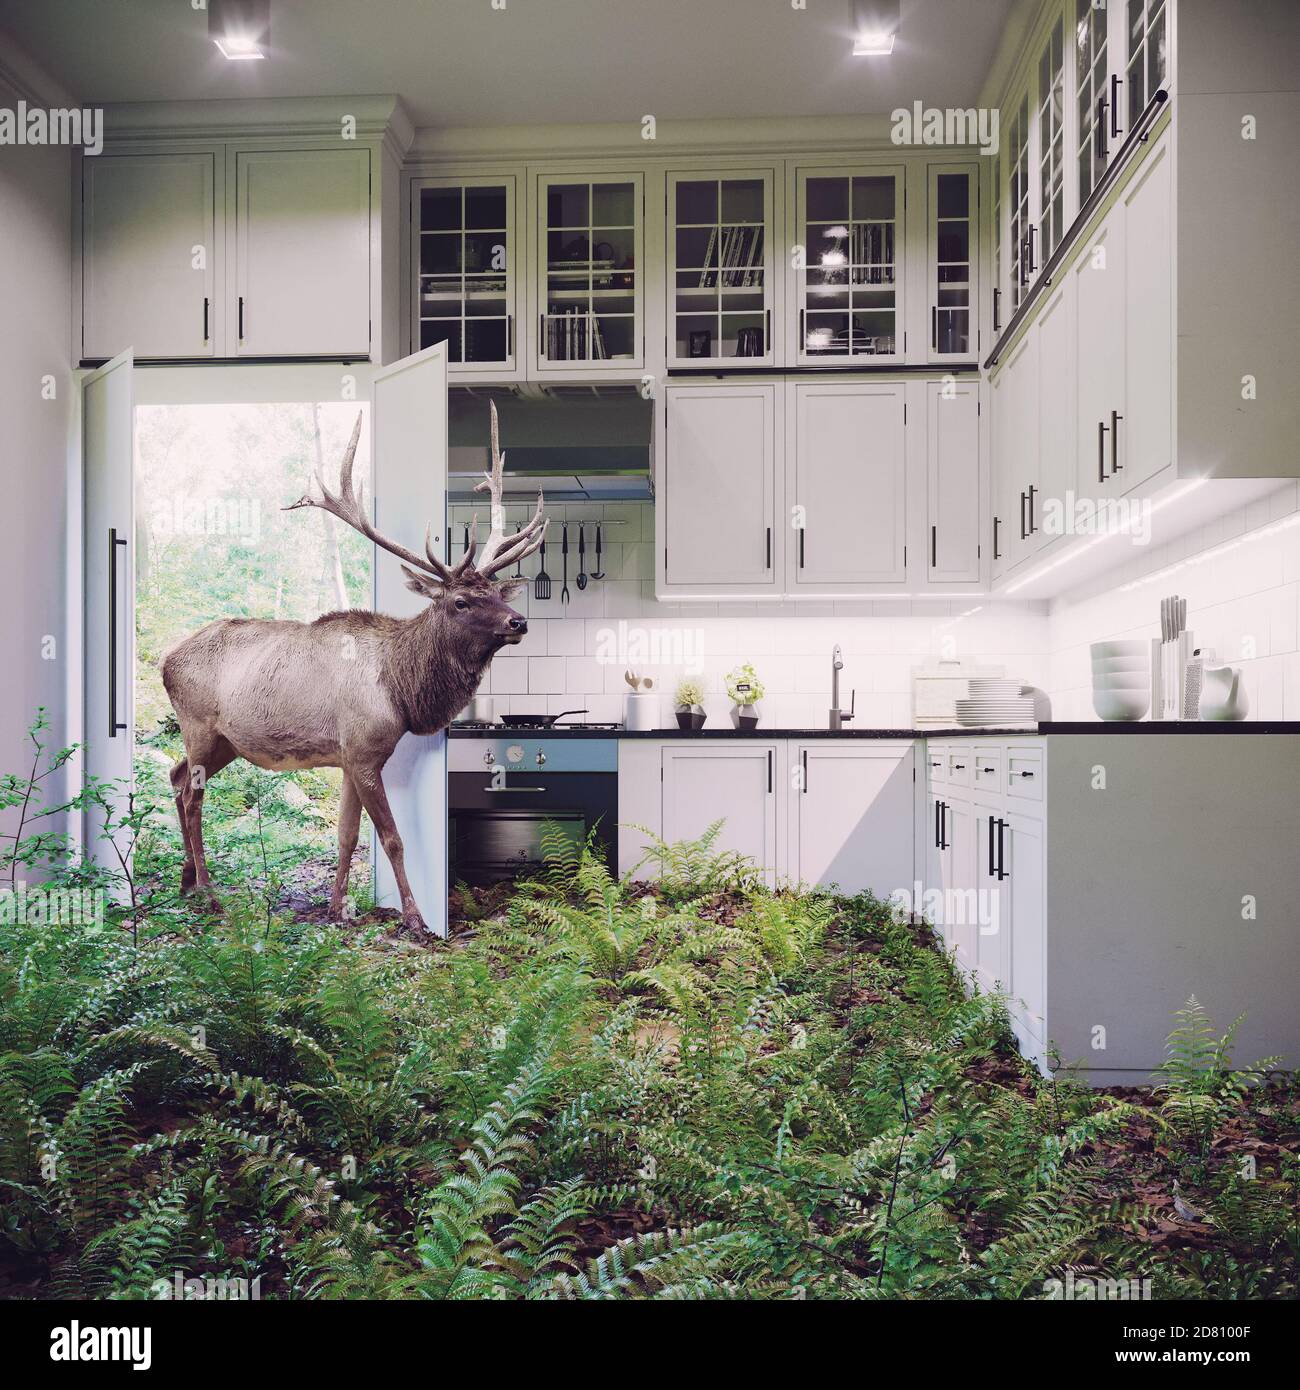 Deer vient à l'intérieur de la cuisine. Illustration créative Media mix Banque D'Images